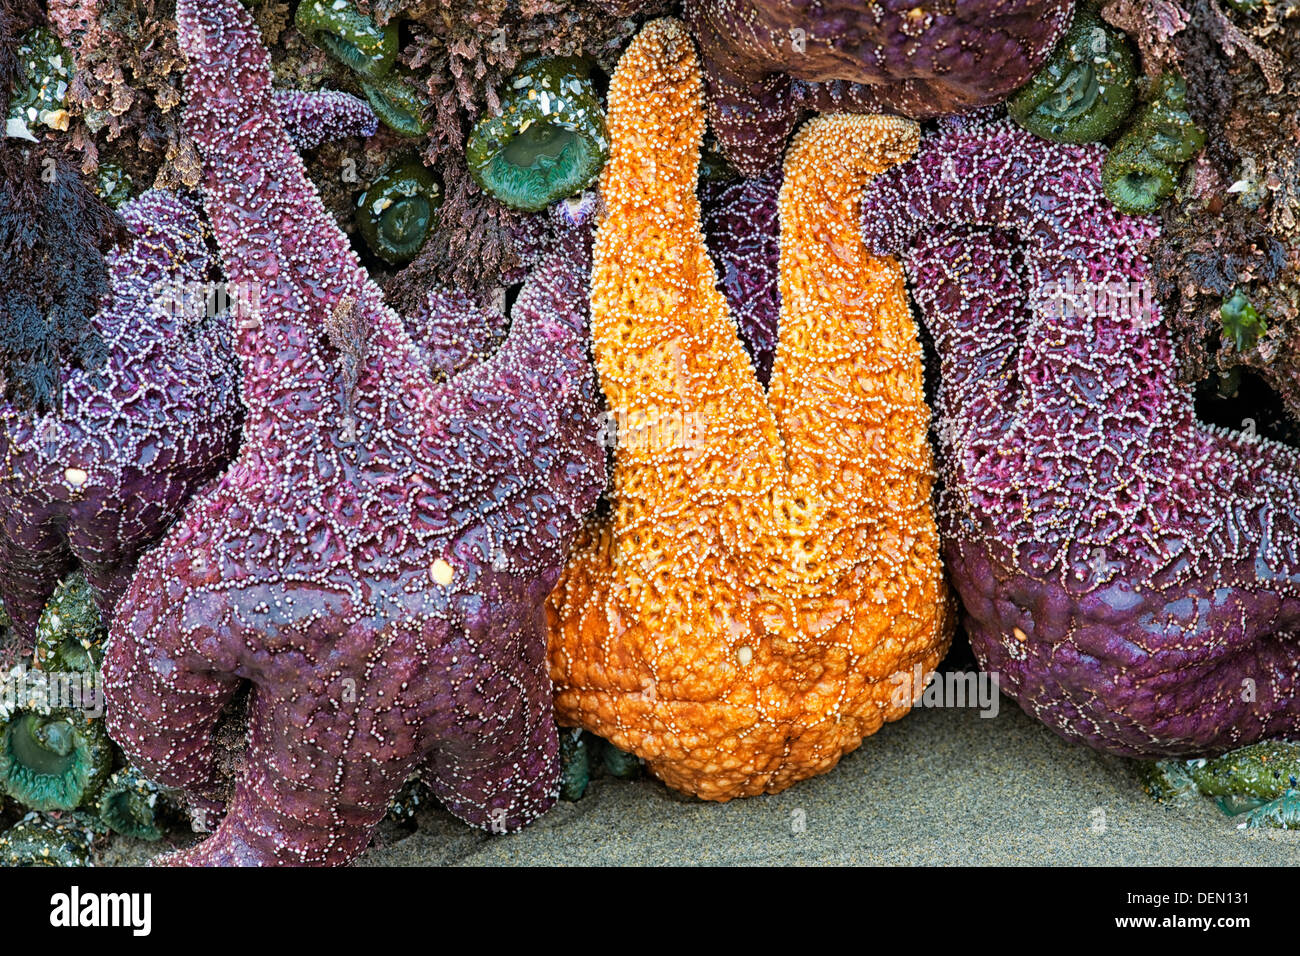 Bandon de l'Oregon plage à marée basse révèle ces étoiles de mer ocre et les anémones. Banque D'Images